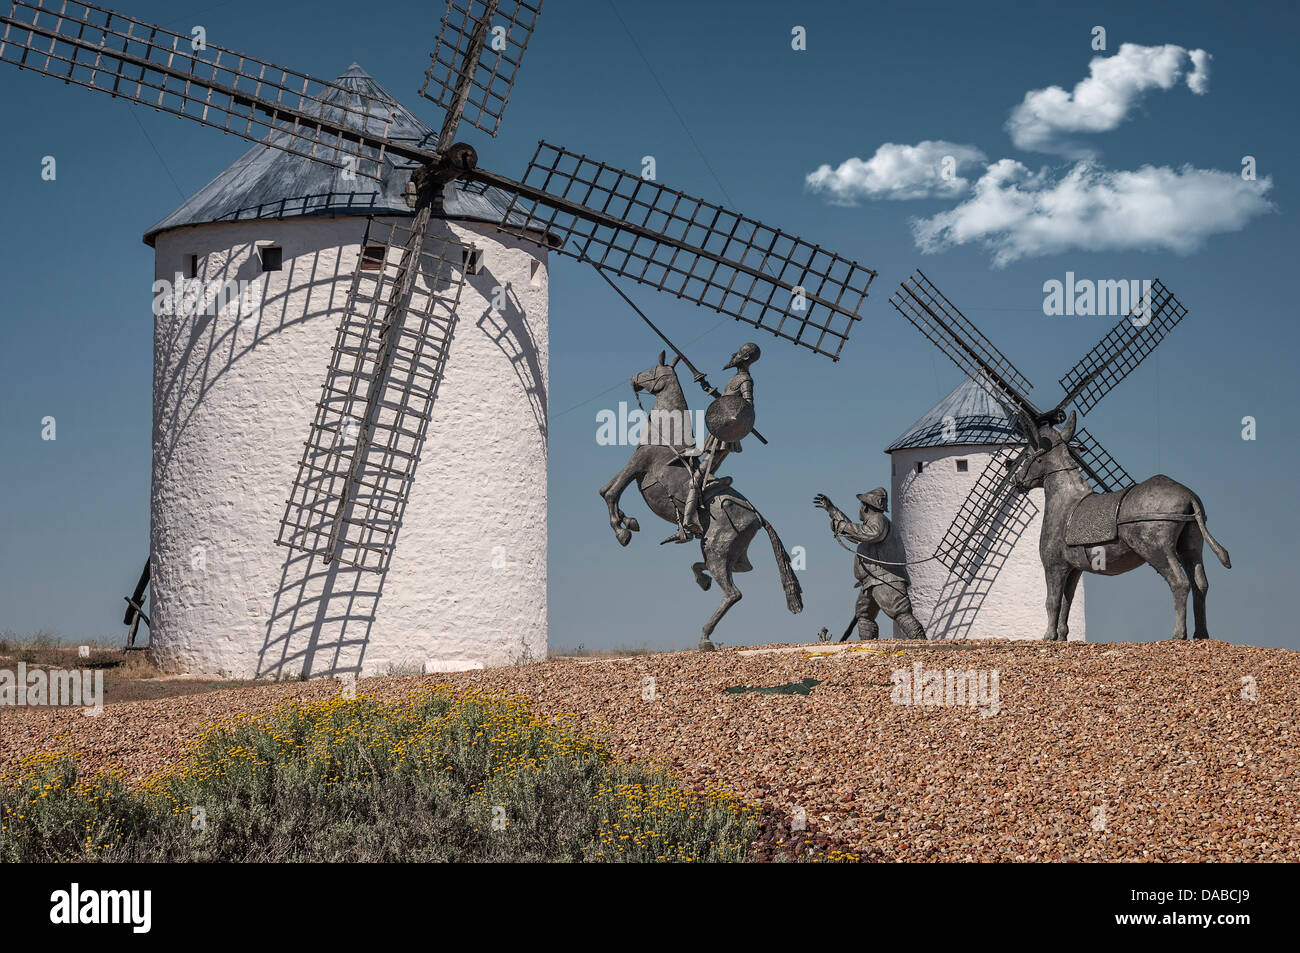 Moulin et statue de Don Quichotte sur son cheval Rocinante et Sancho Panza à Campo de Criptana, Castilla la Mancha, Espagne. Banque D'Images